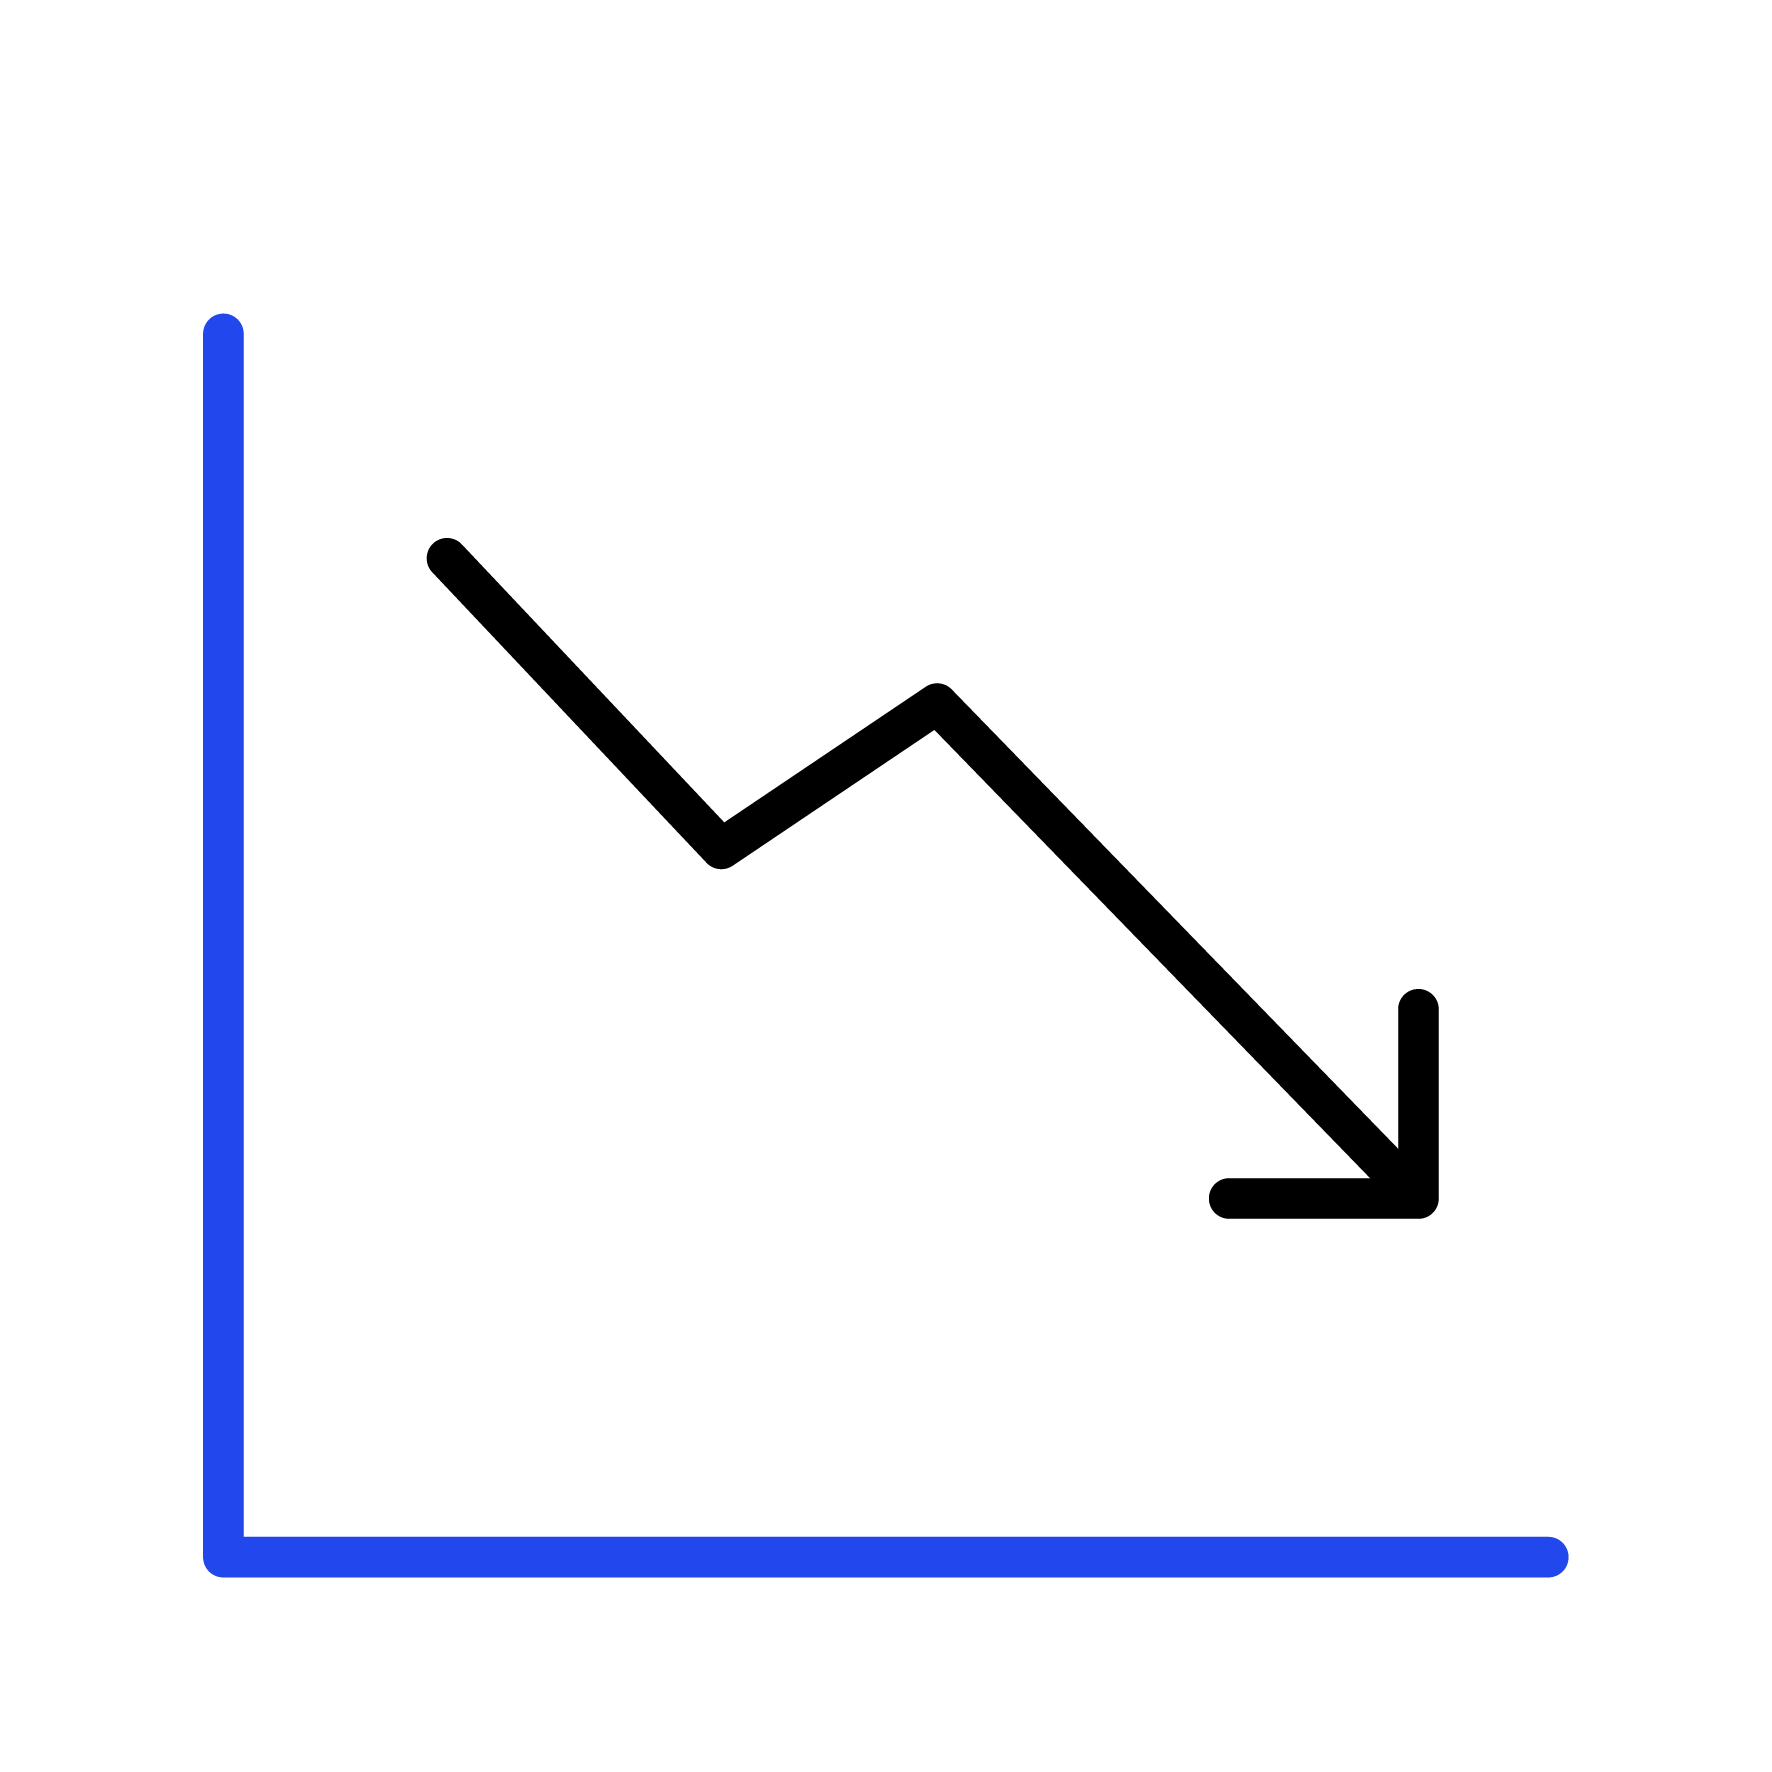 Downward line chart